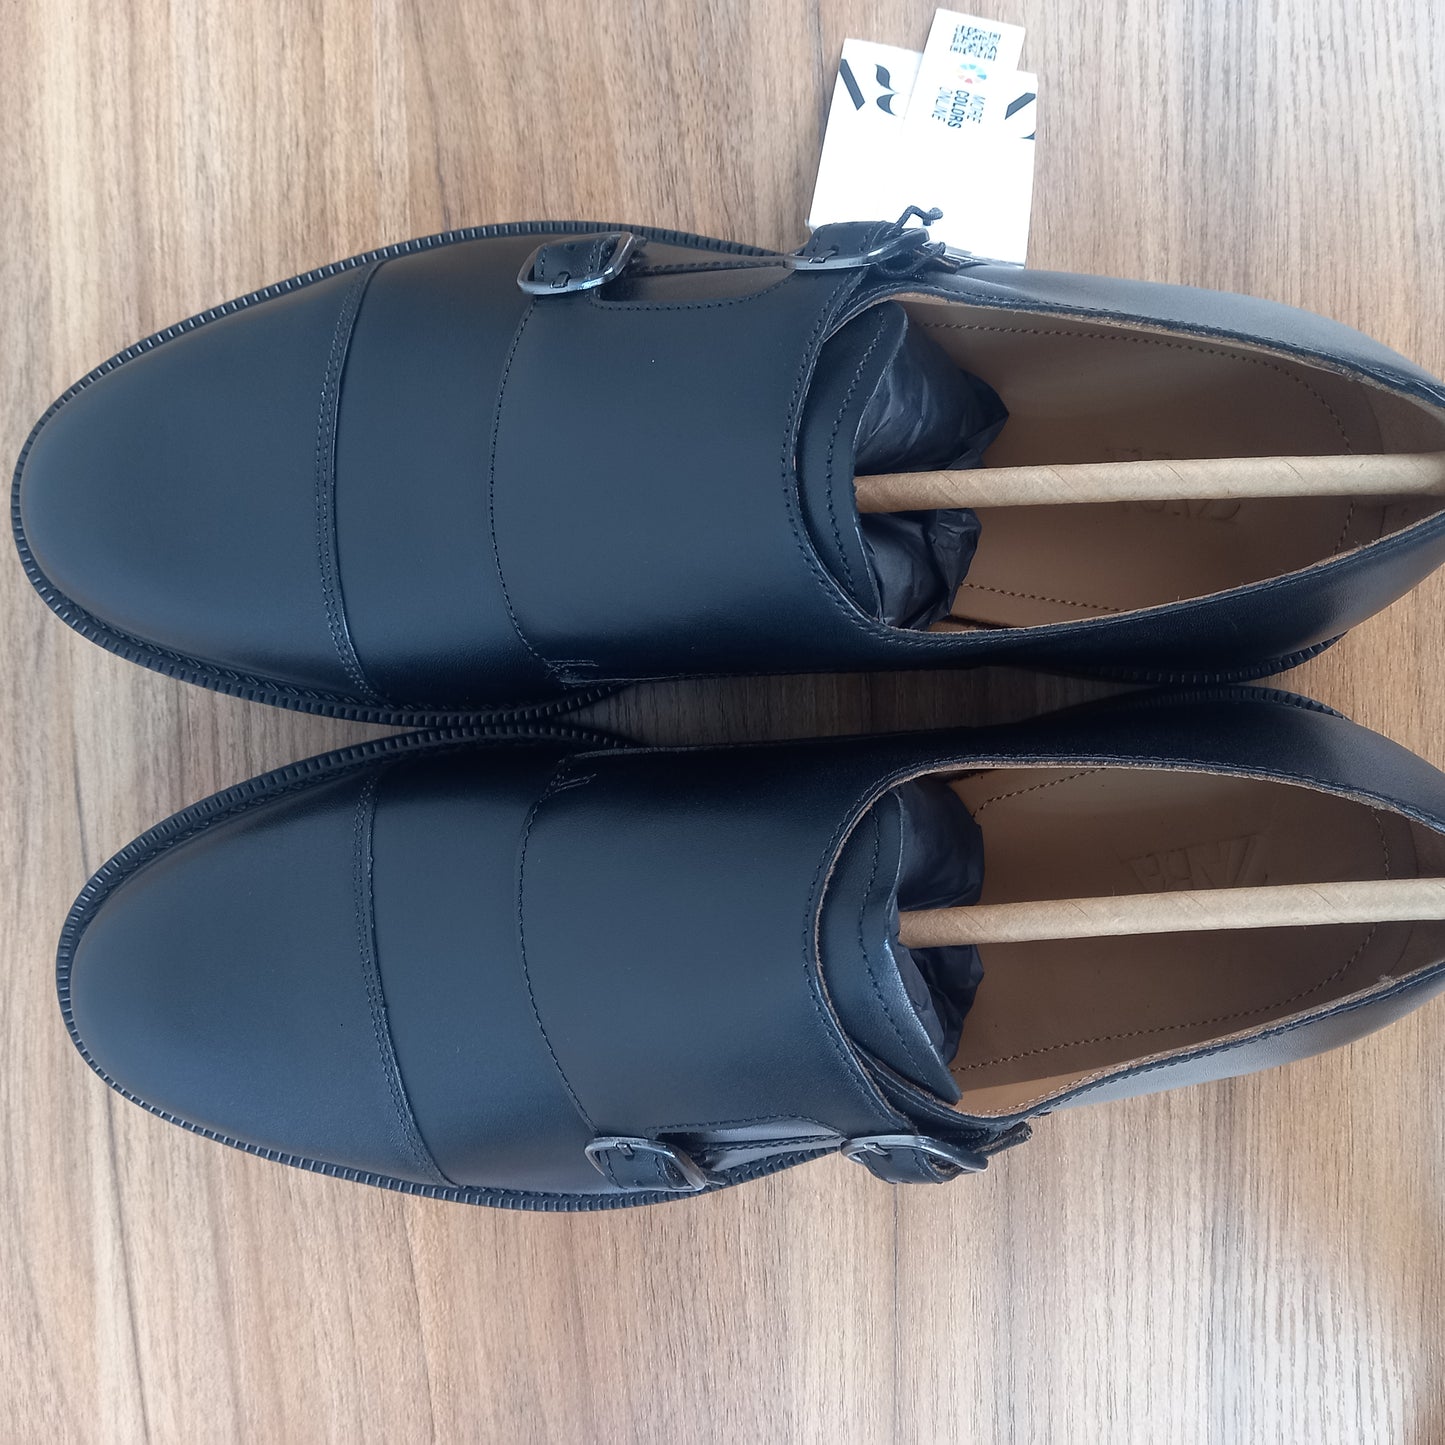 Zara leather monk shoe